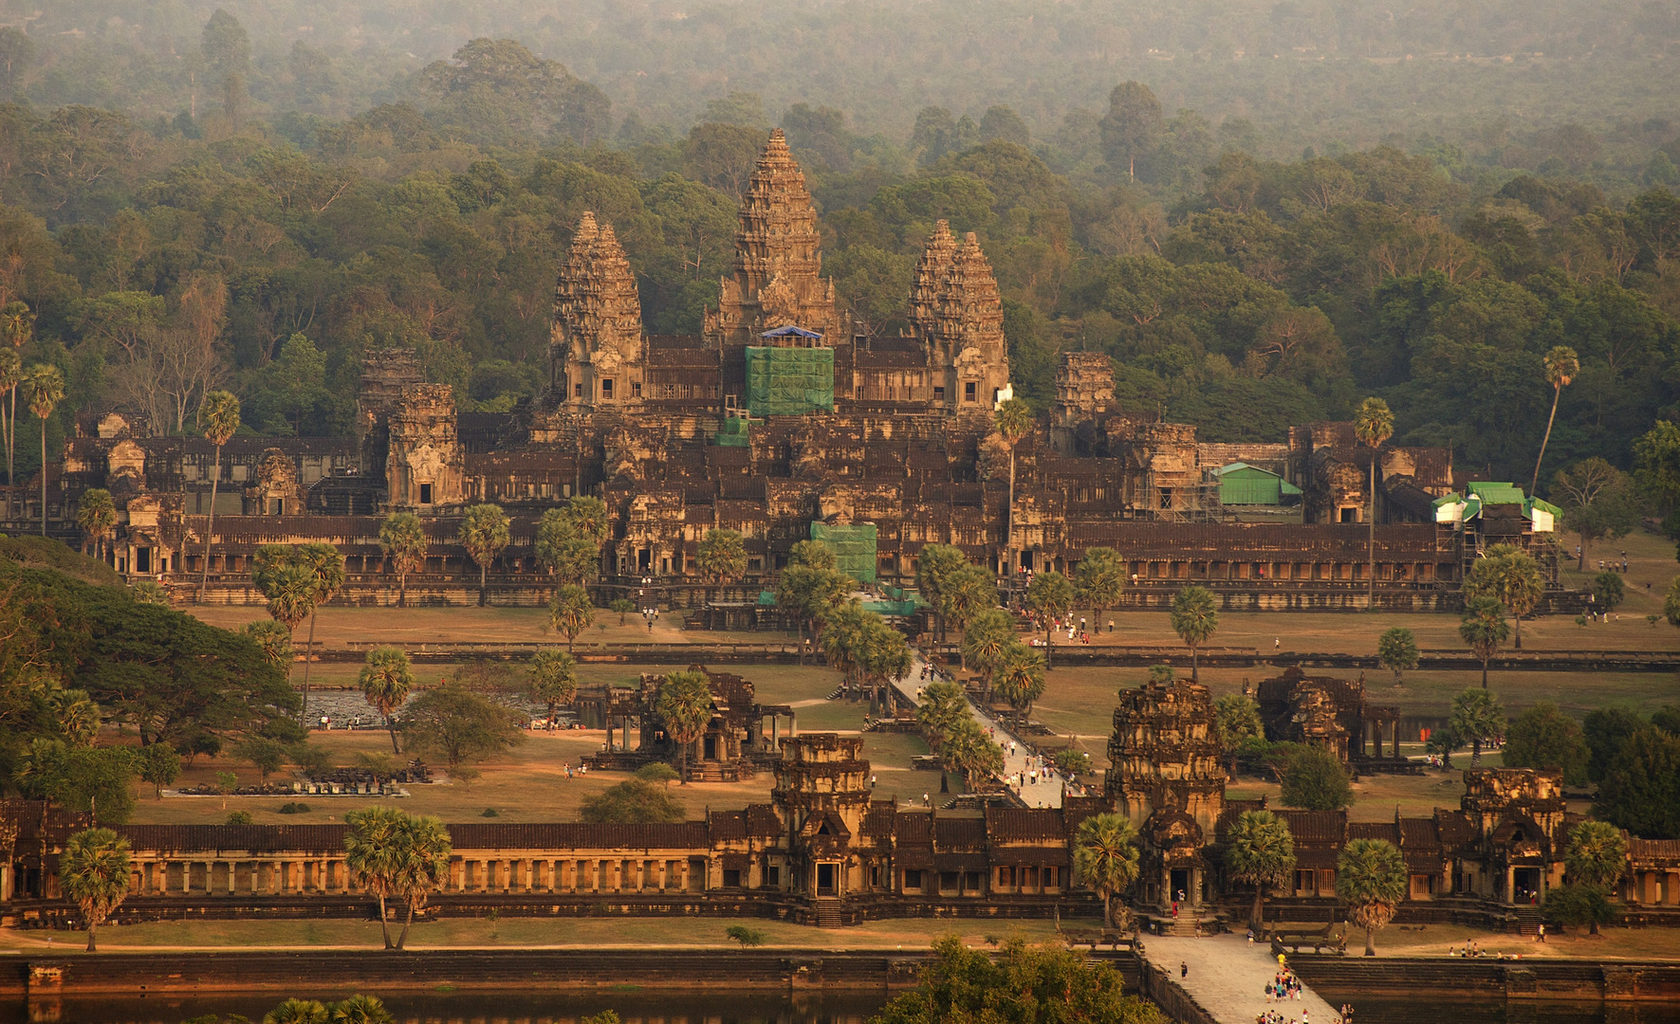 Камбоджа виза фото